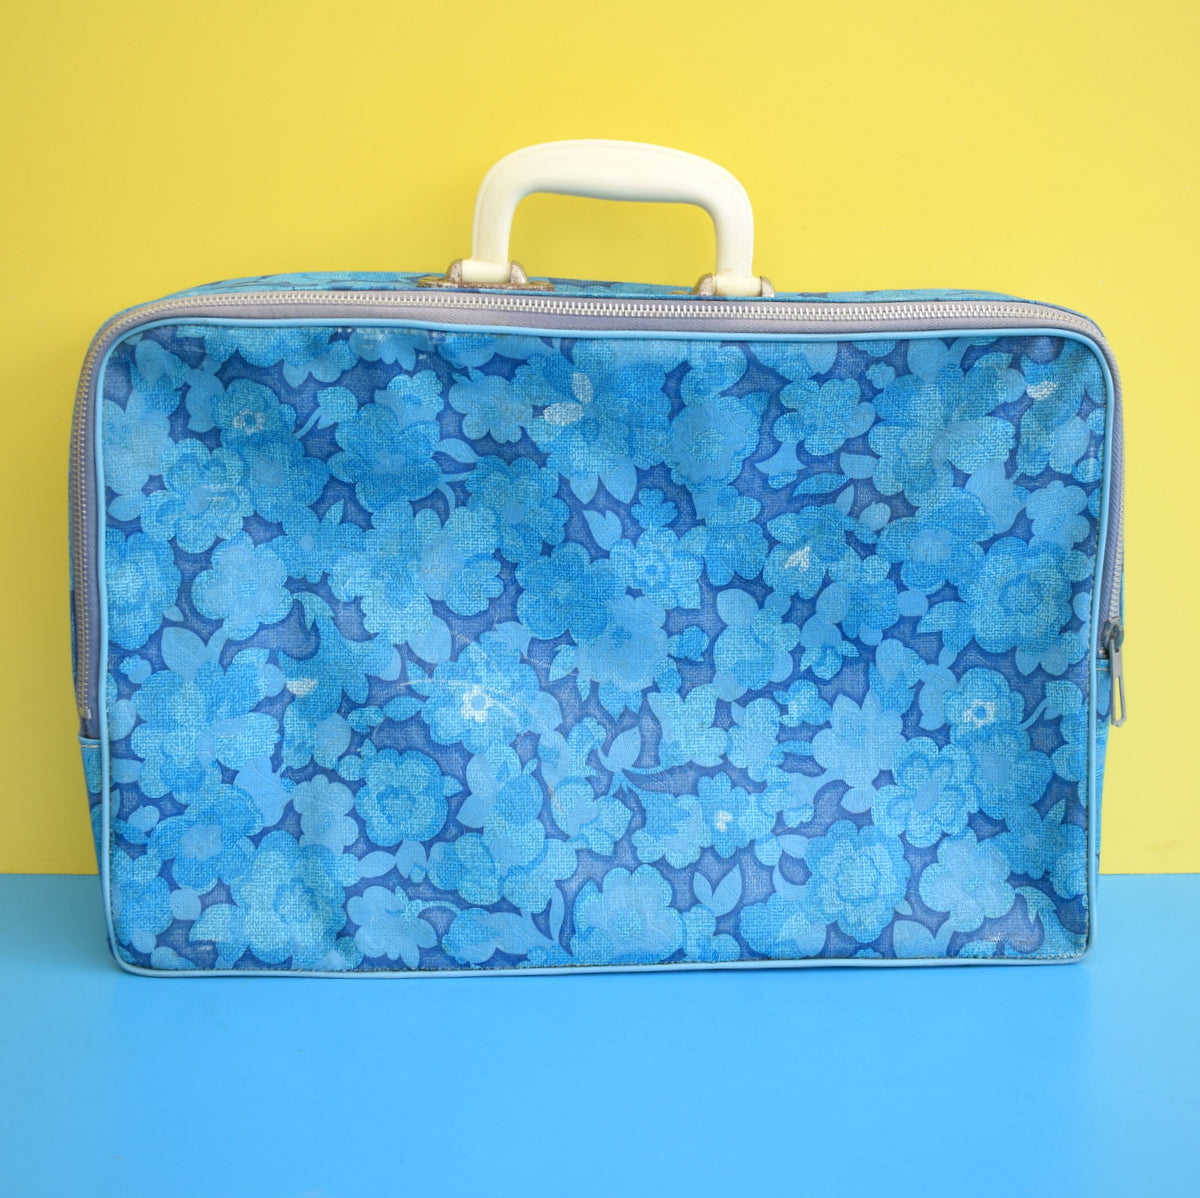 Vintage 1960s PVC Suitcase - Flower Power - Blue